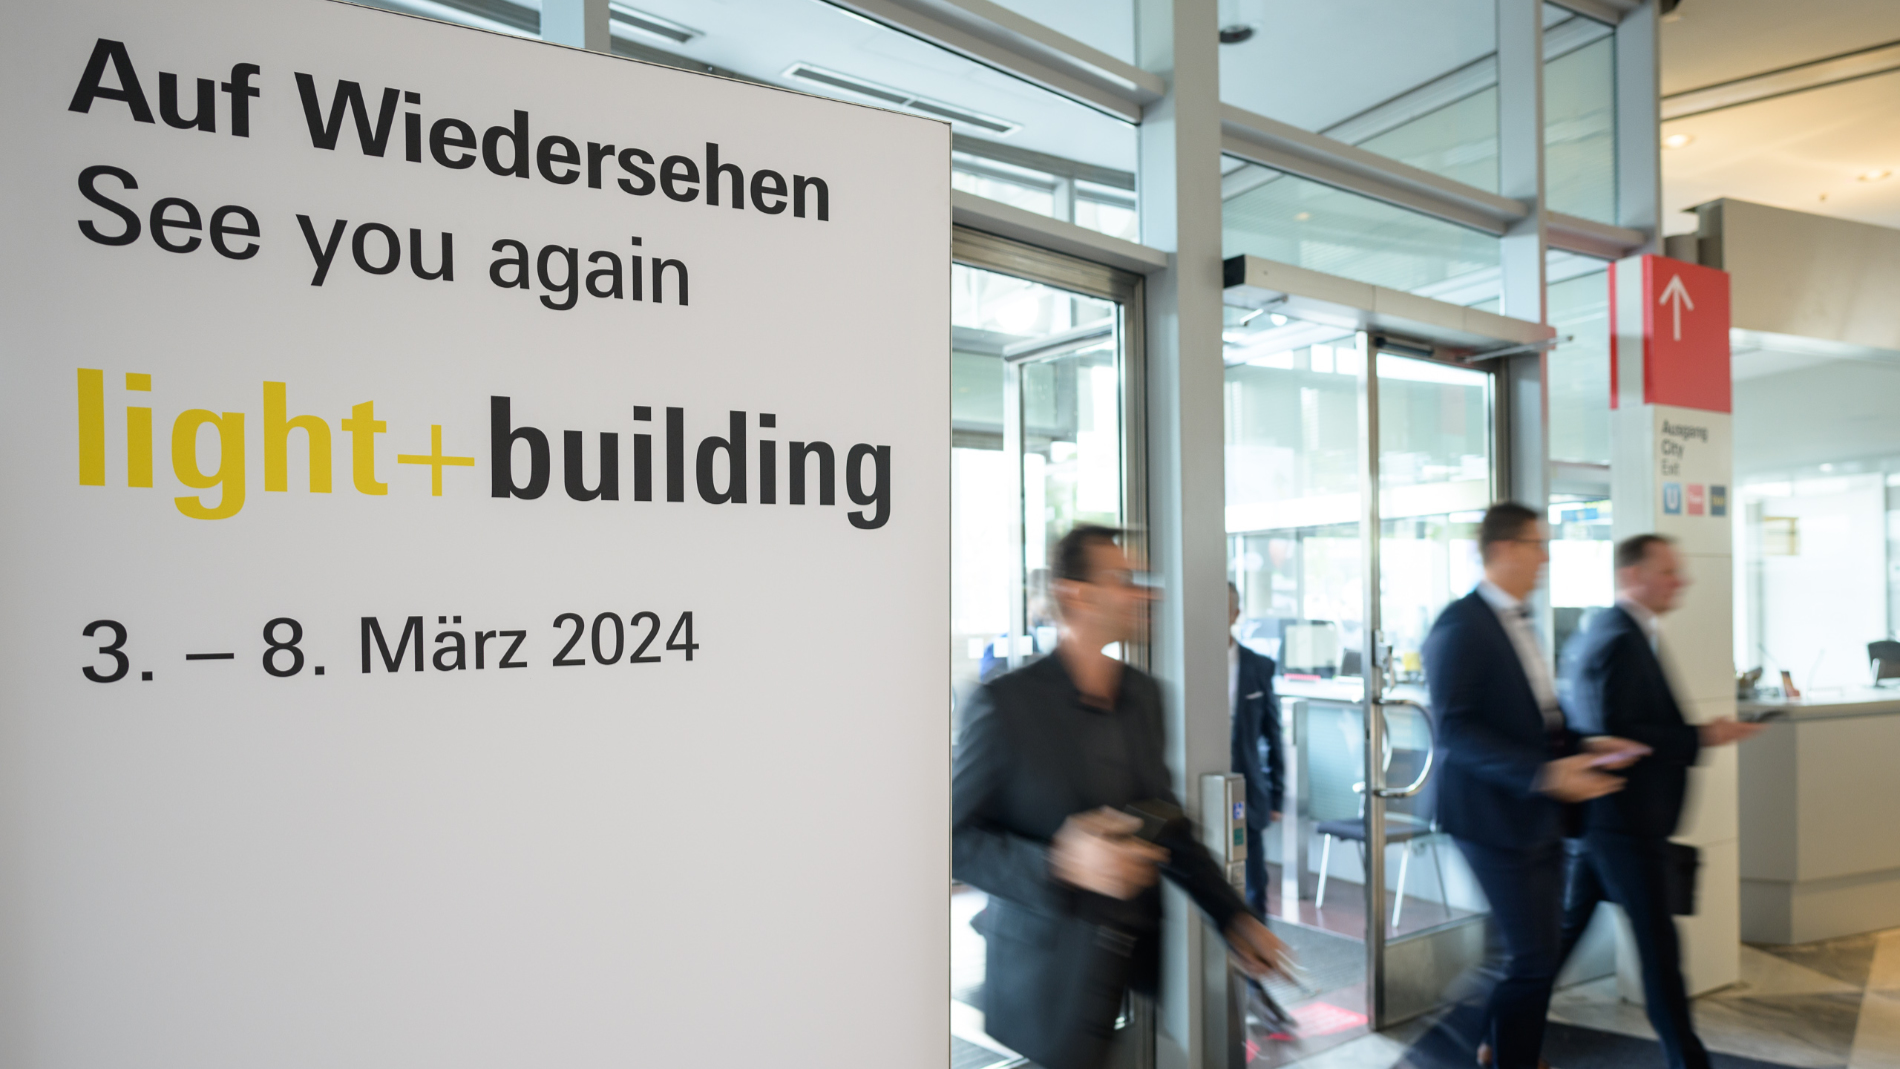 Zufriedene Besucher bekunden Wiederbesuchsabsicht zur Light + Building 2024. (Quelle: Messe Frankfurt Exhibition GmbH / Pietro Sutera)